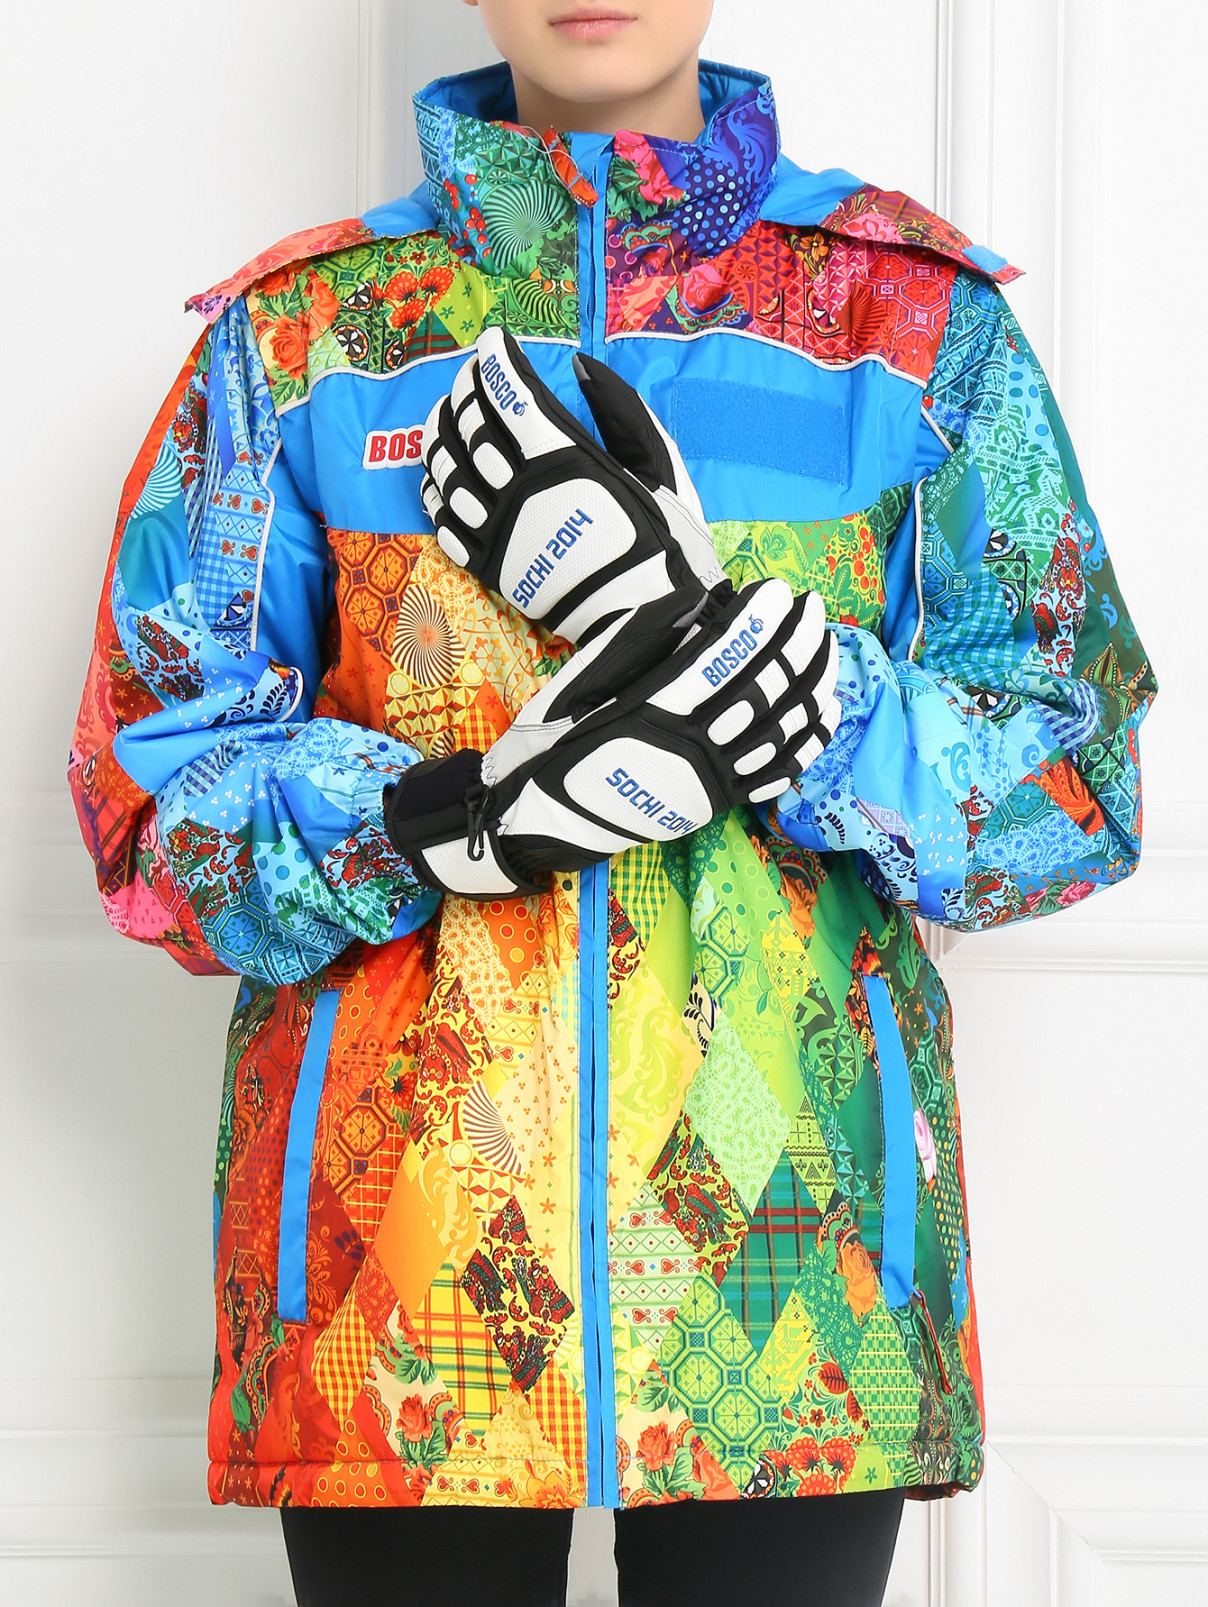 Перчатки утепленные с вышивкой Sochi 2014  –  Модель Общий вид  – Цвет:  Черный